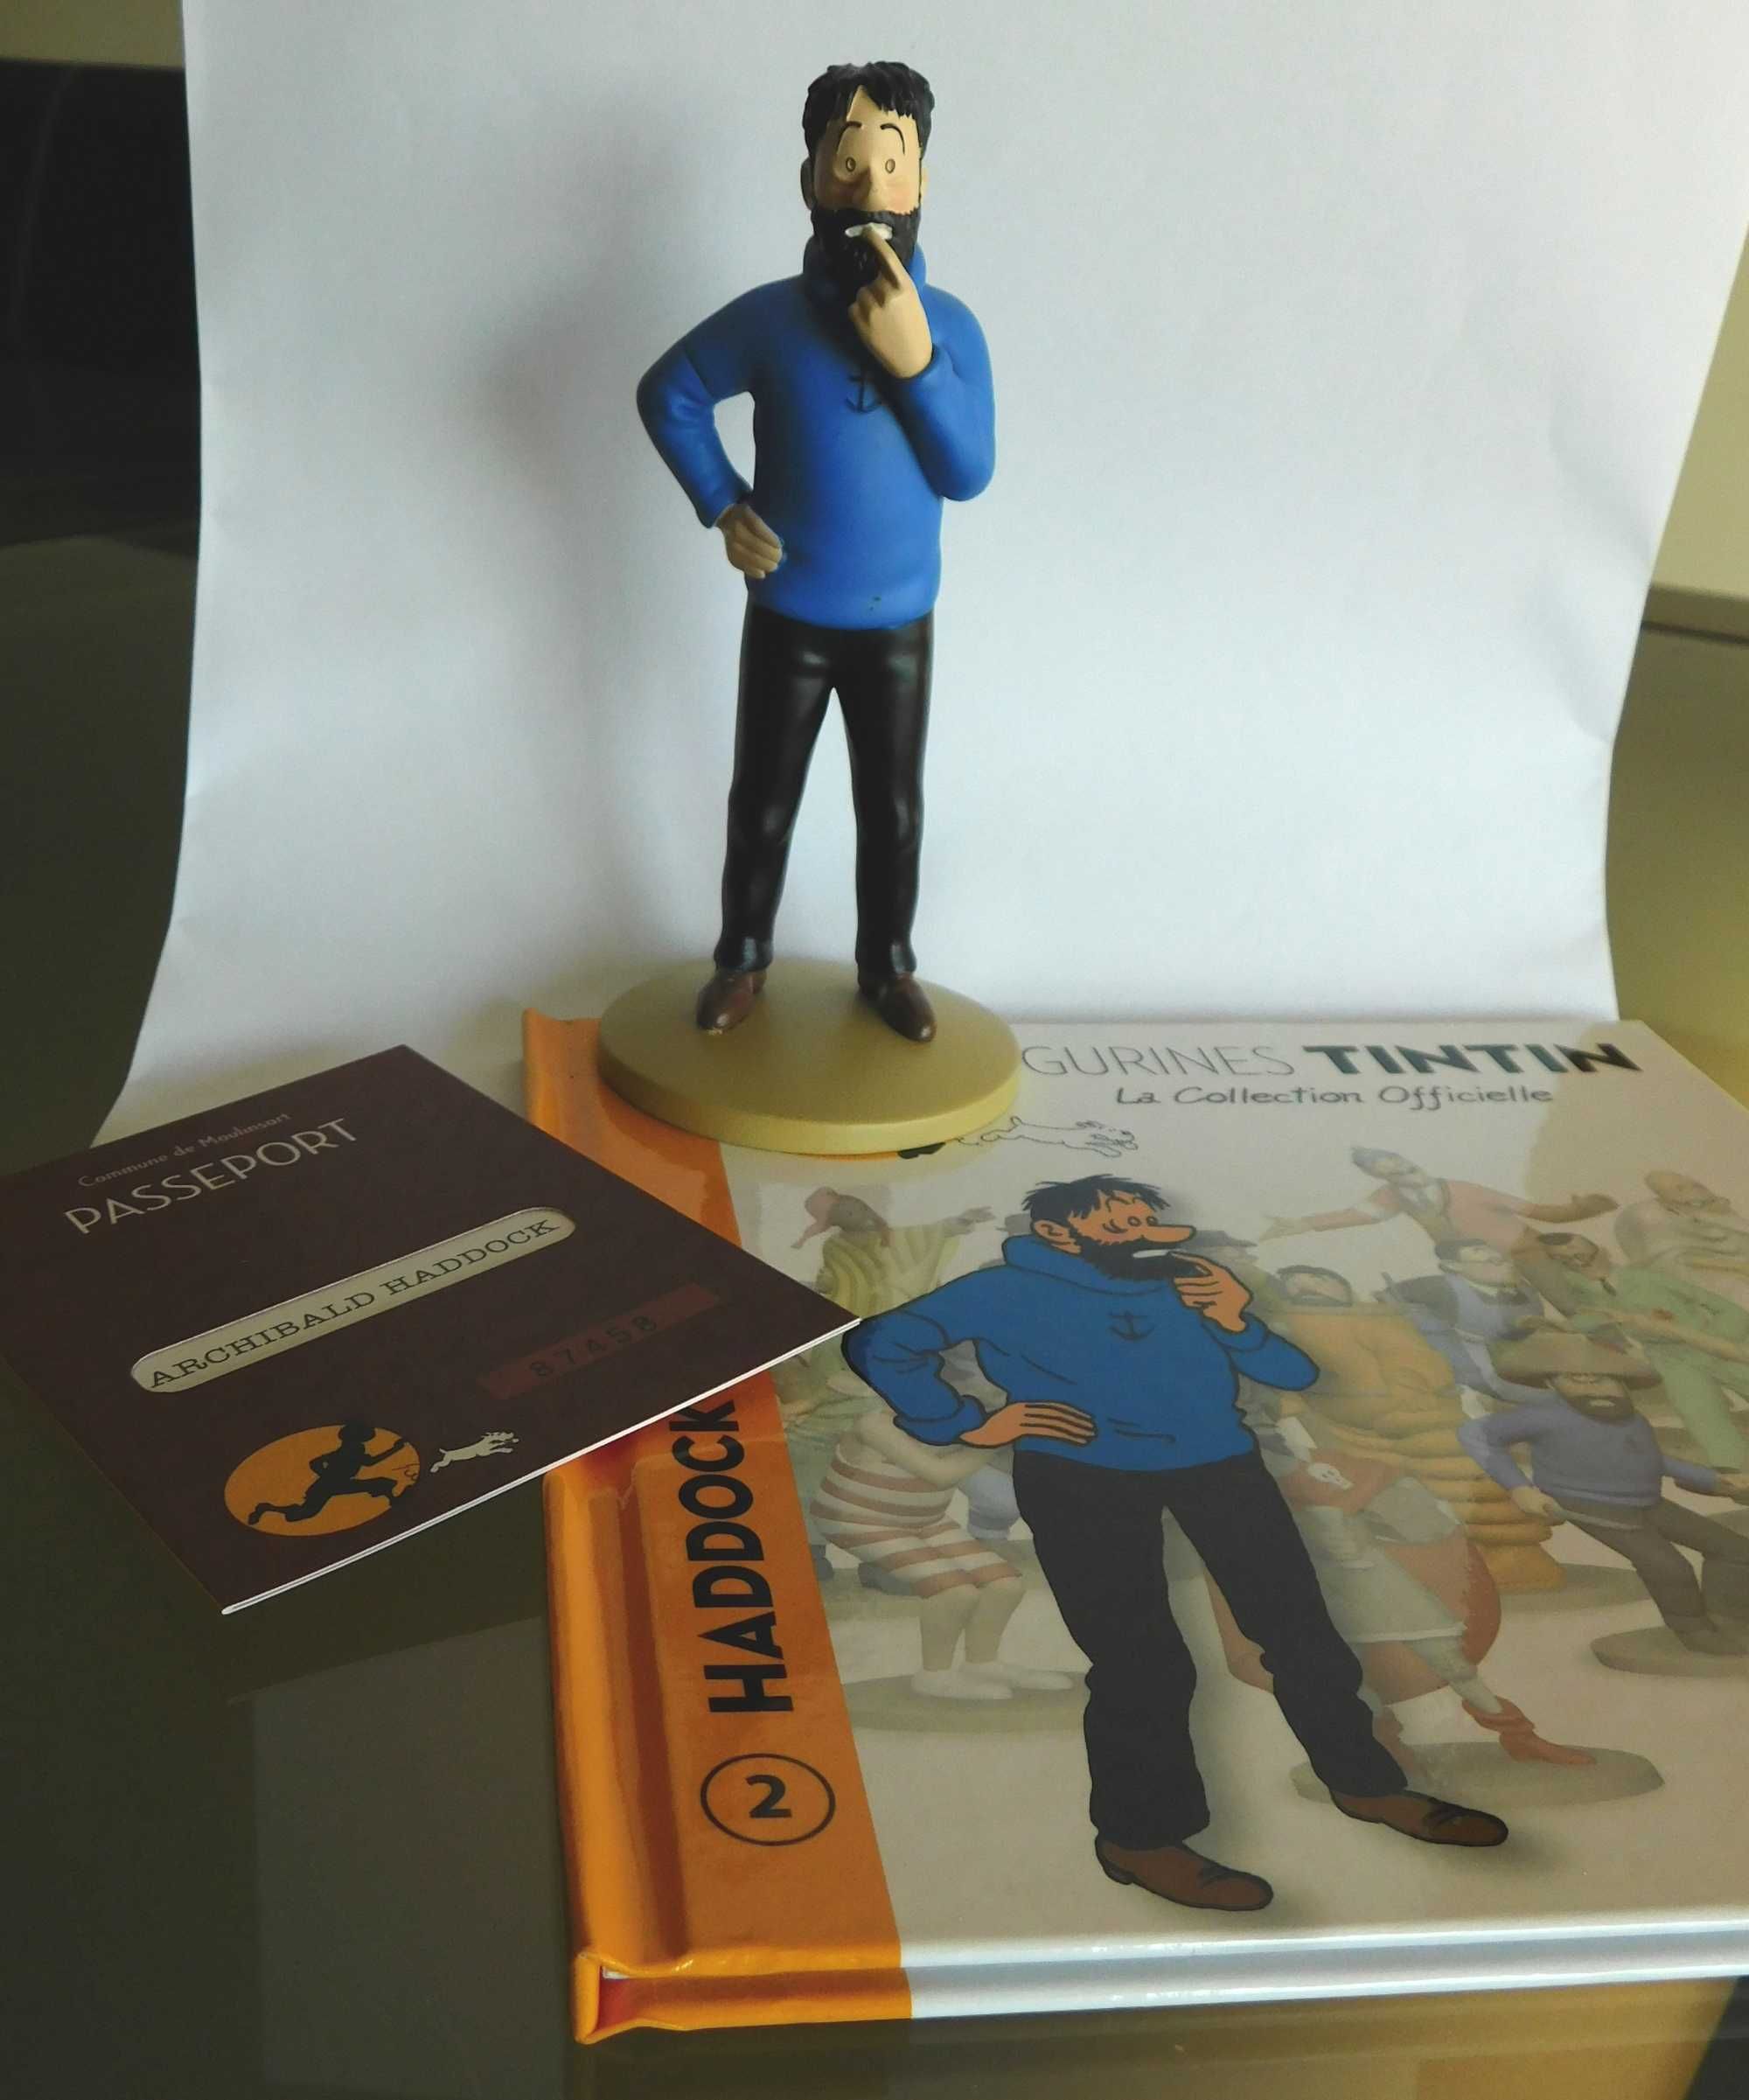 Figura Tintin Capitão Haddock Coleção oficial Moulinsart Hergé França